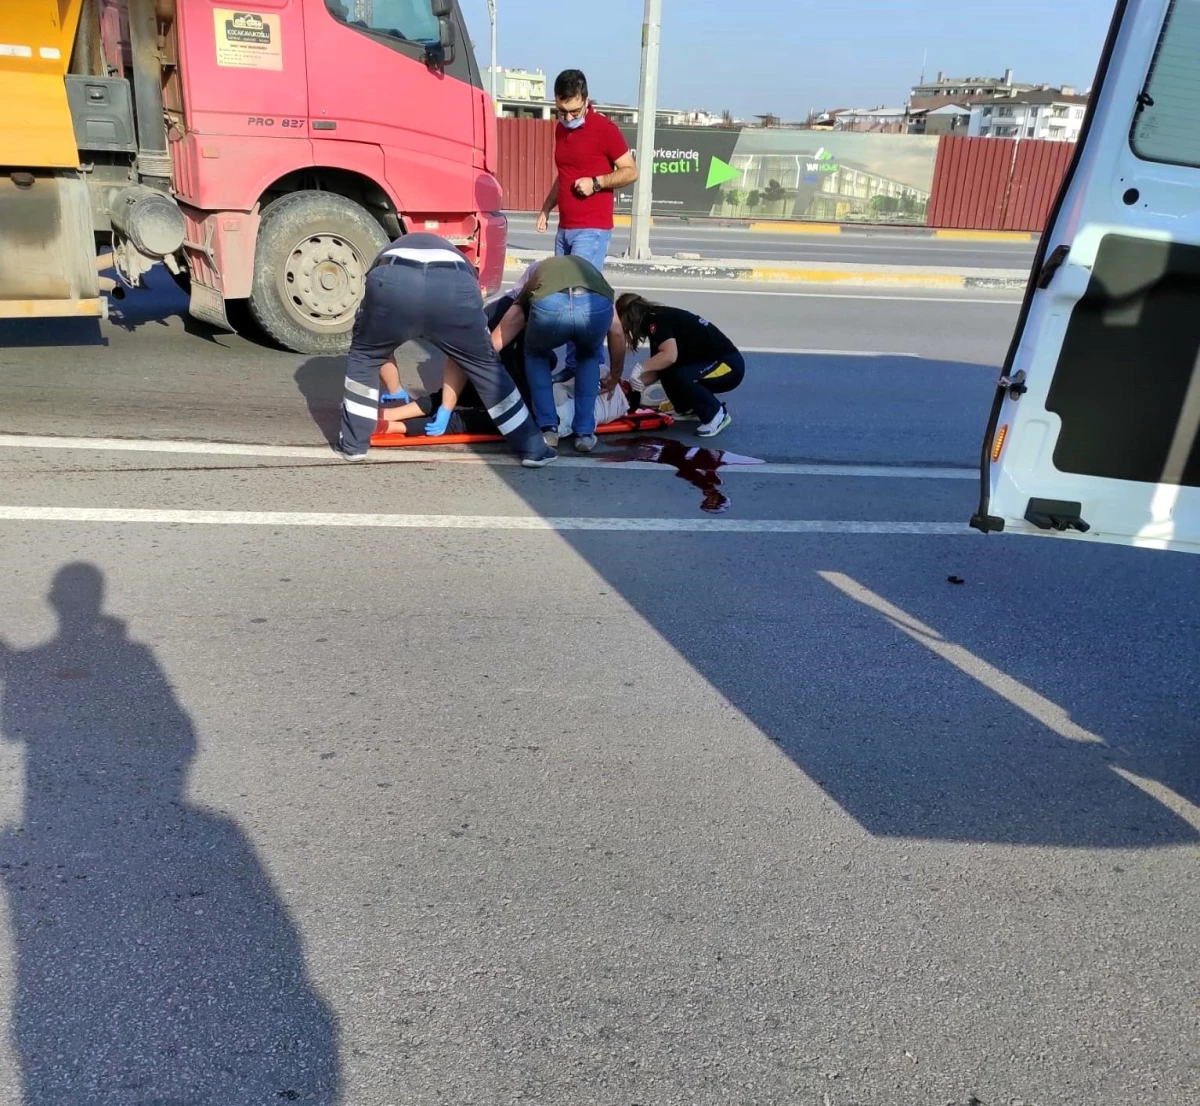 Son dakika haber | Bisikleti ile okula giden lise öğrencisine polis aracı çarptı